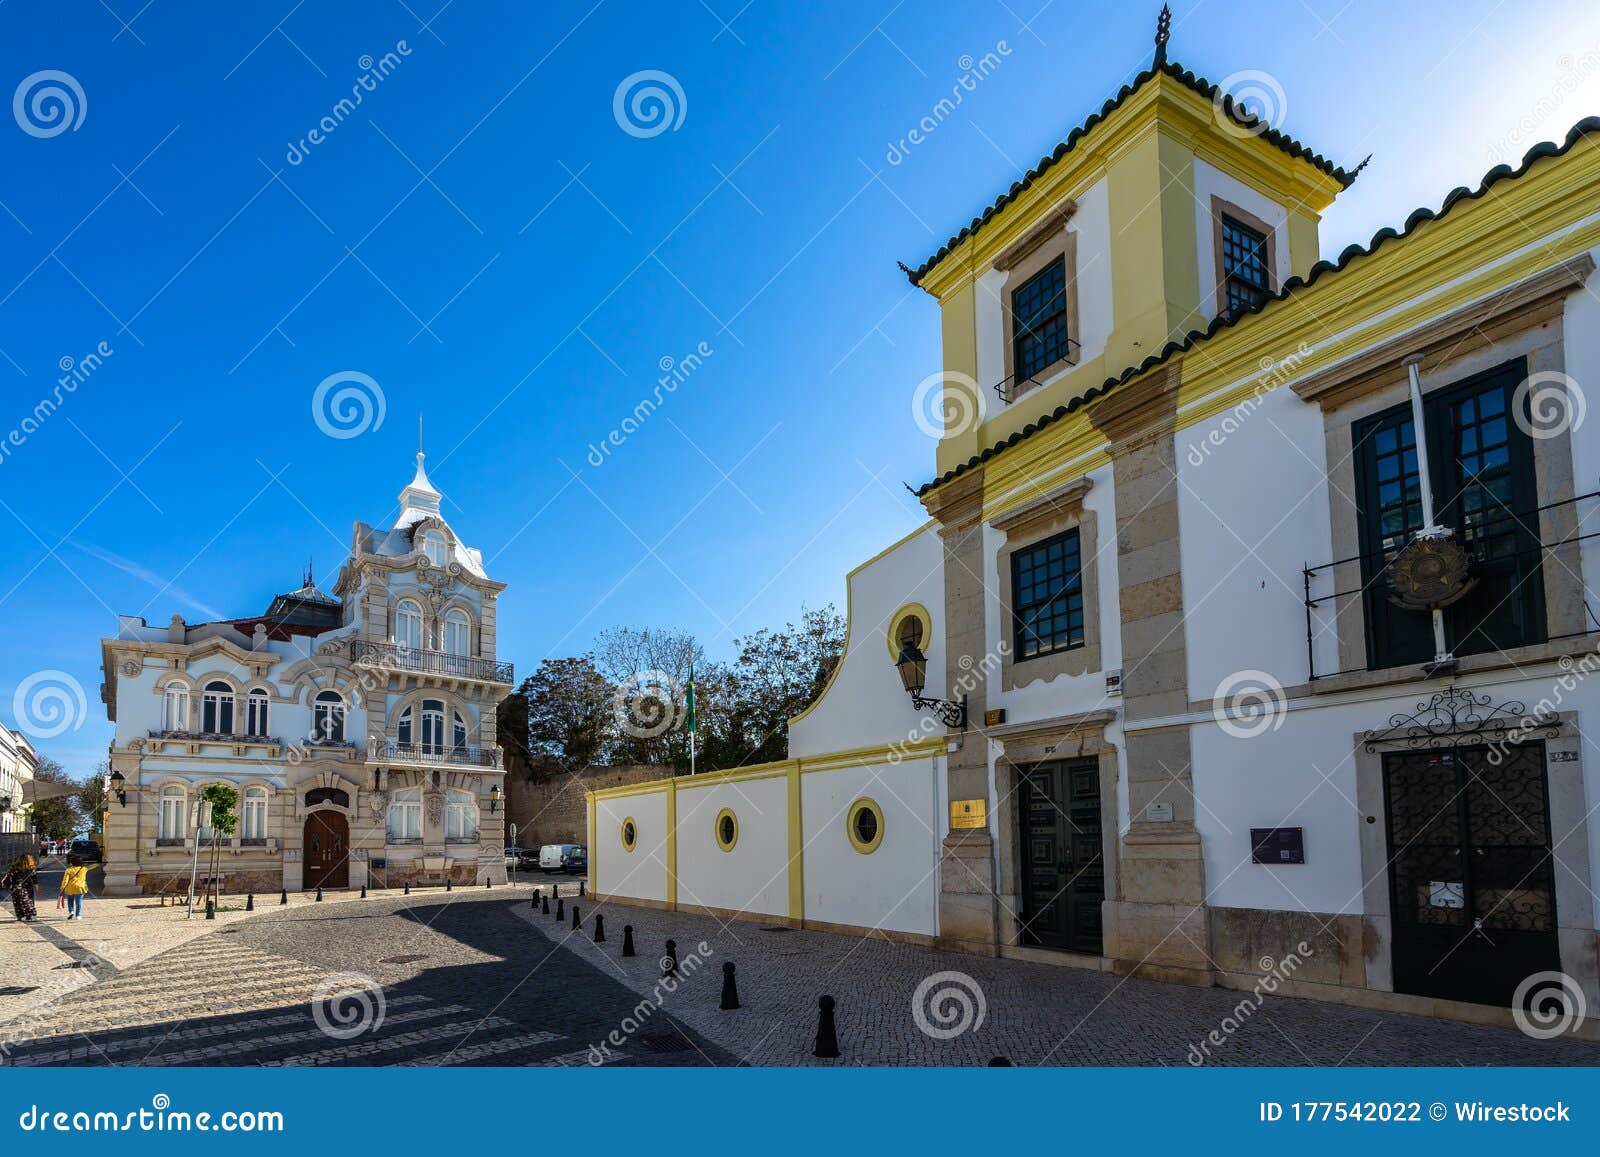 palacete belmarco and brazilian consulate in algarve, portugal